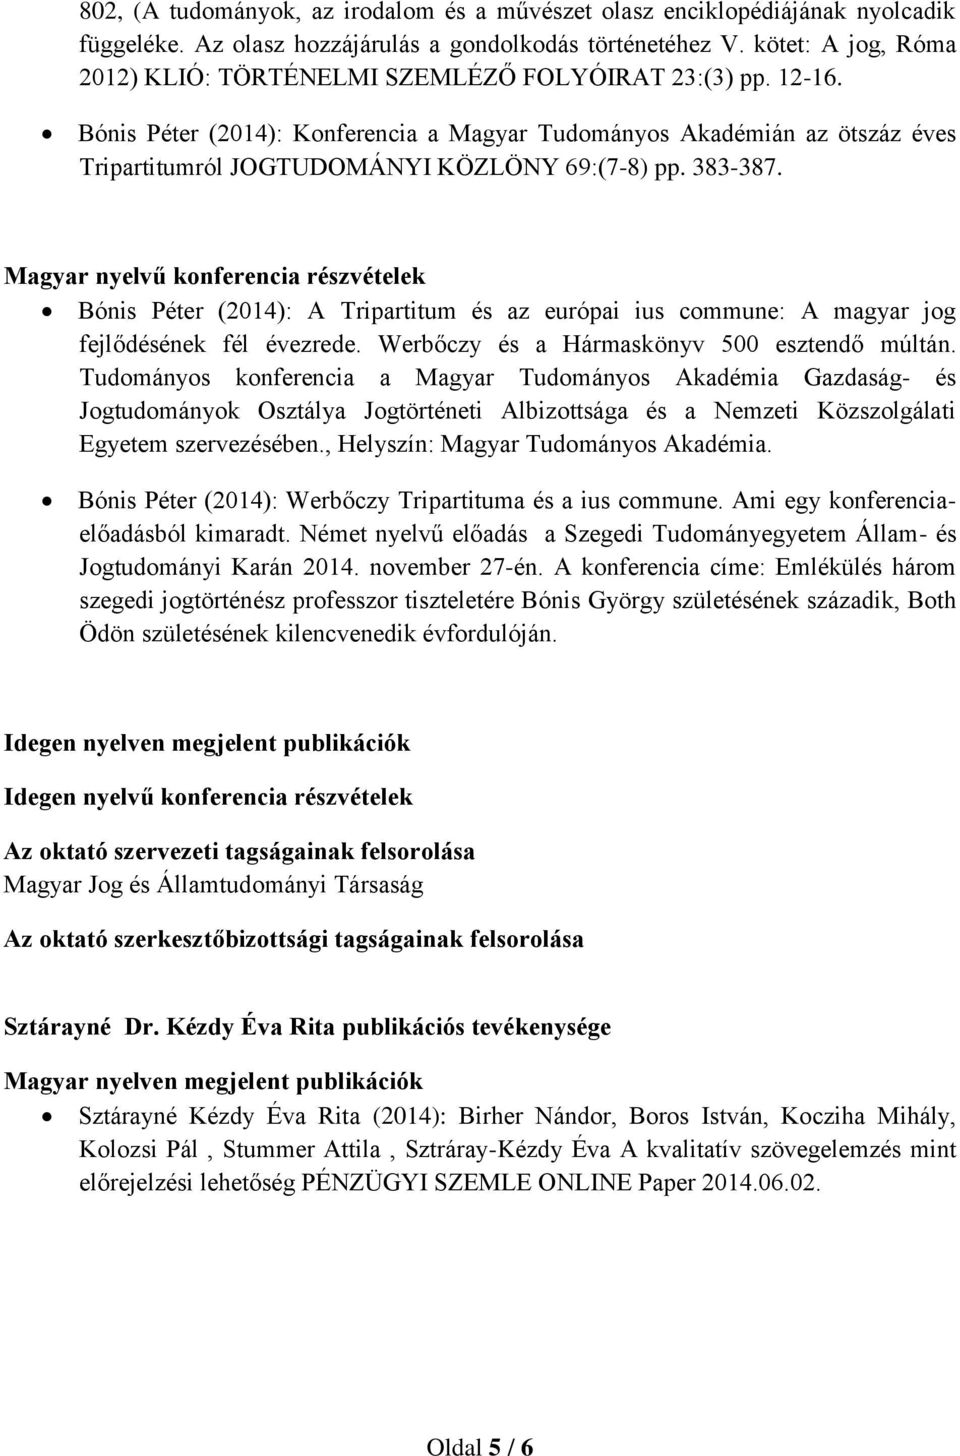 Bónis Péter (2014): Konferencia a Magyar Tudományos Akadémián az ötszáz éves Tripartitumról JOGTUDOMÁNYI KÖZLÖNY 69:(7-8) pp. 383-387.